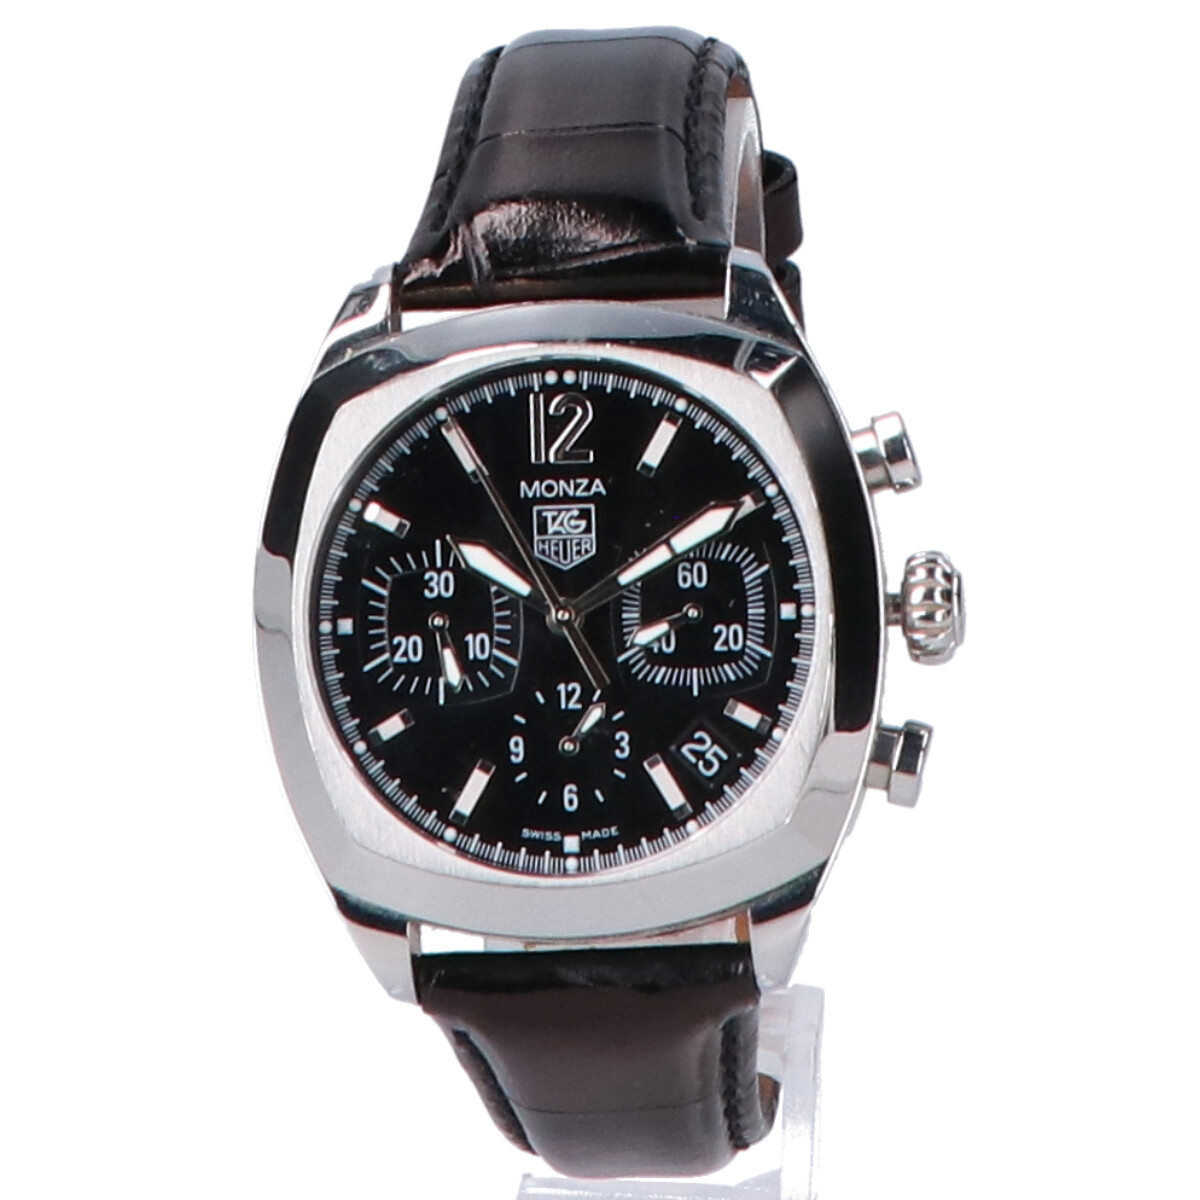 タグ・ホイヤーのCR2113-0 モンツァクロノグラフ　自動巻き腕時計の買取実績です。